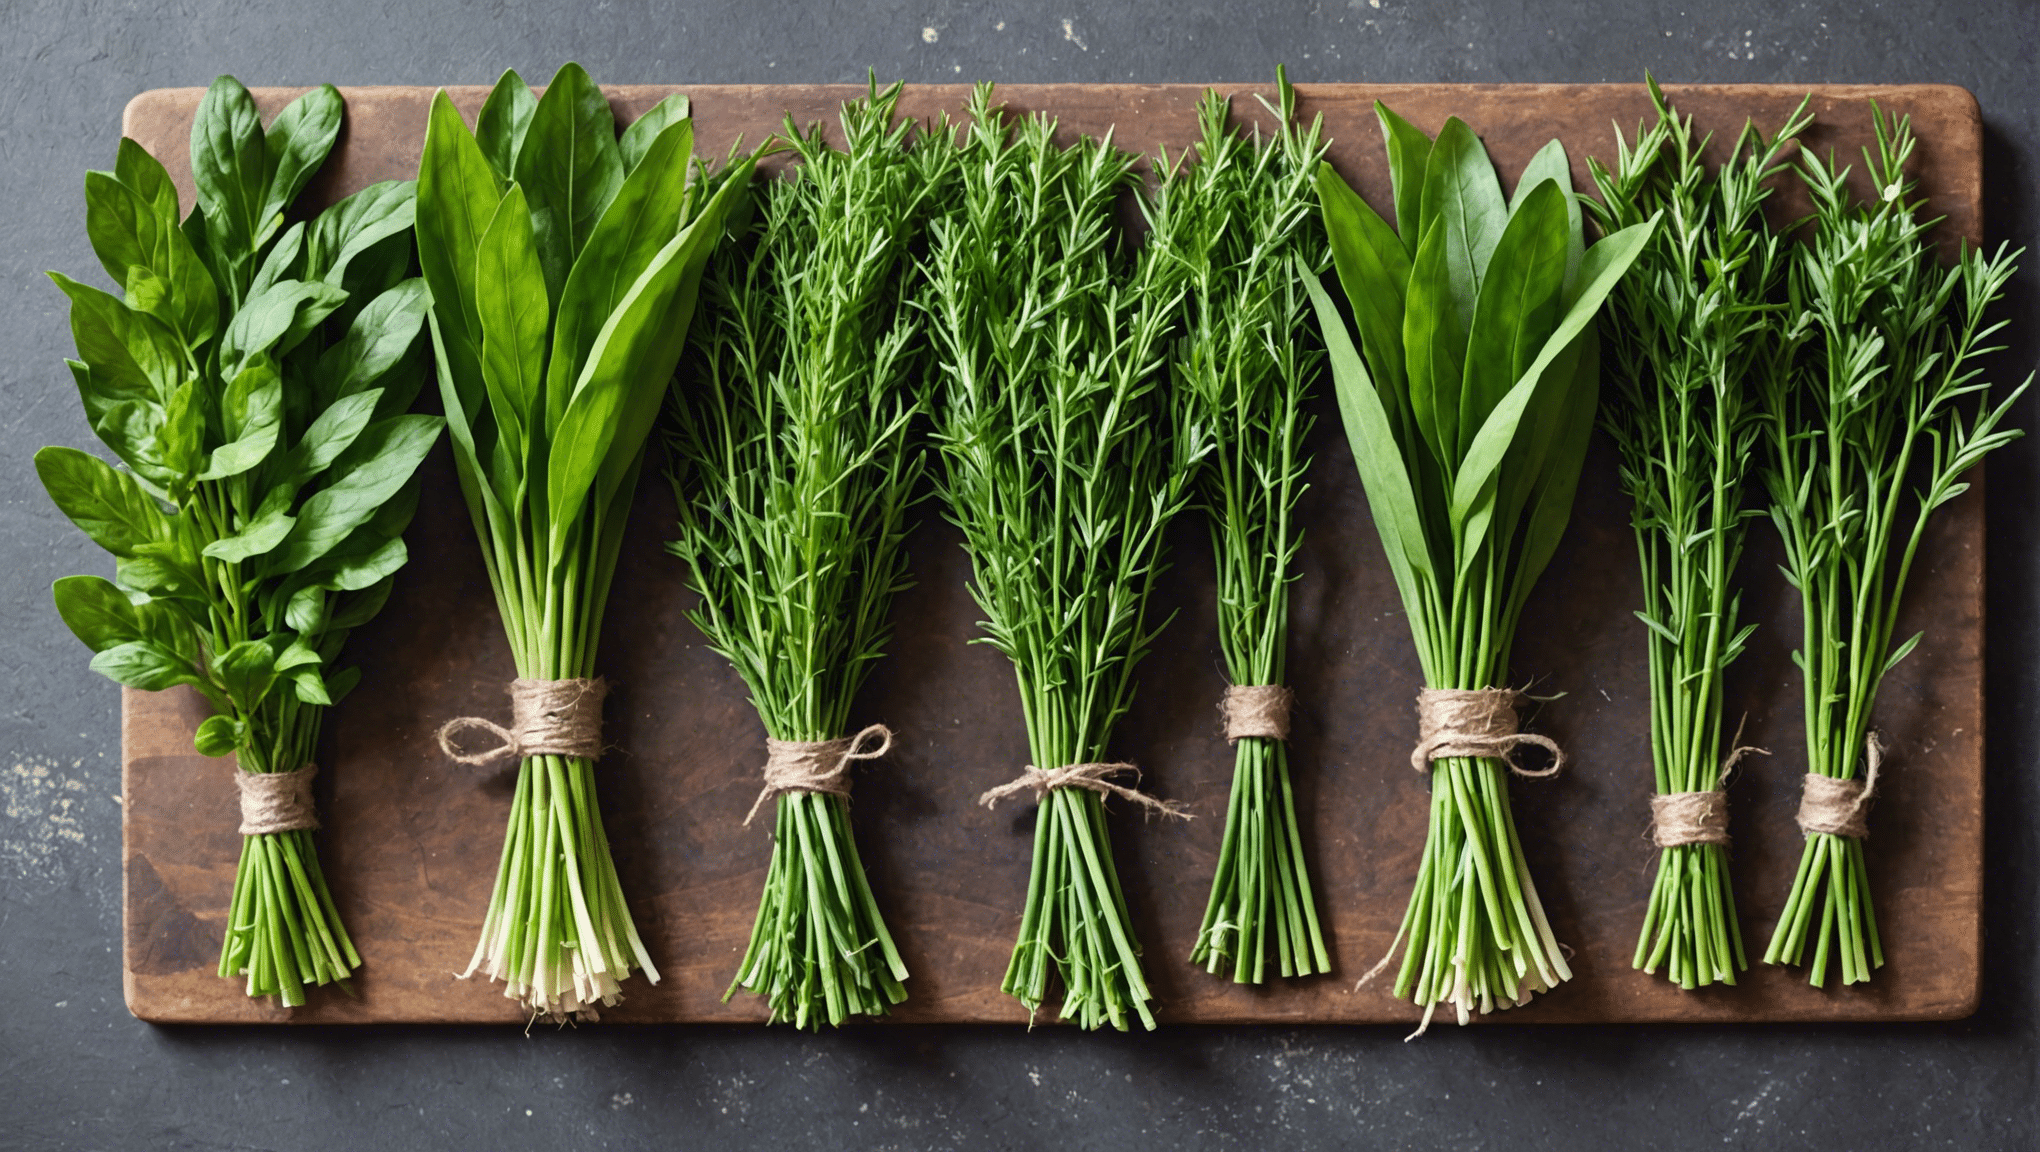 découvrez comment choisir les herbes fraîches qui donneront une saveur exceptionnelle à vos plats avec nos conseils pratiques.